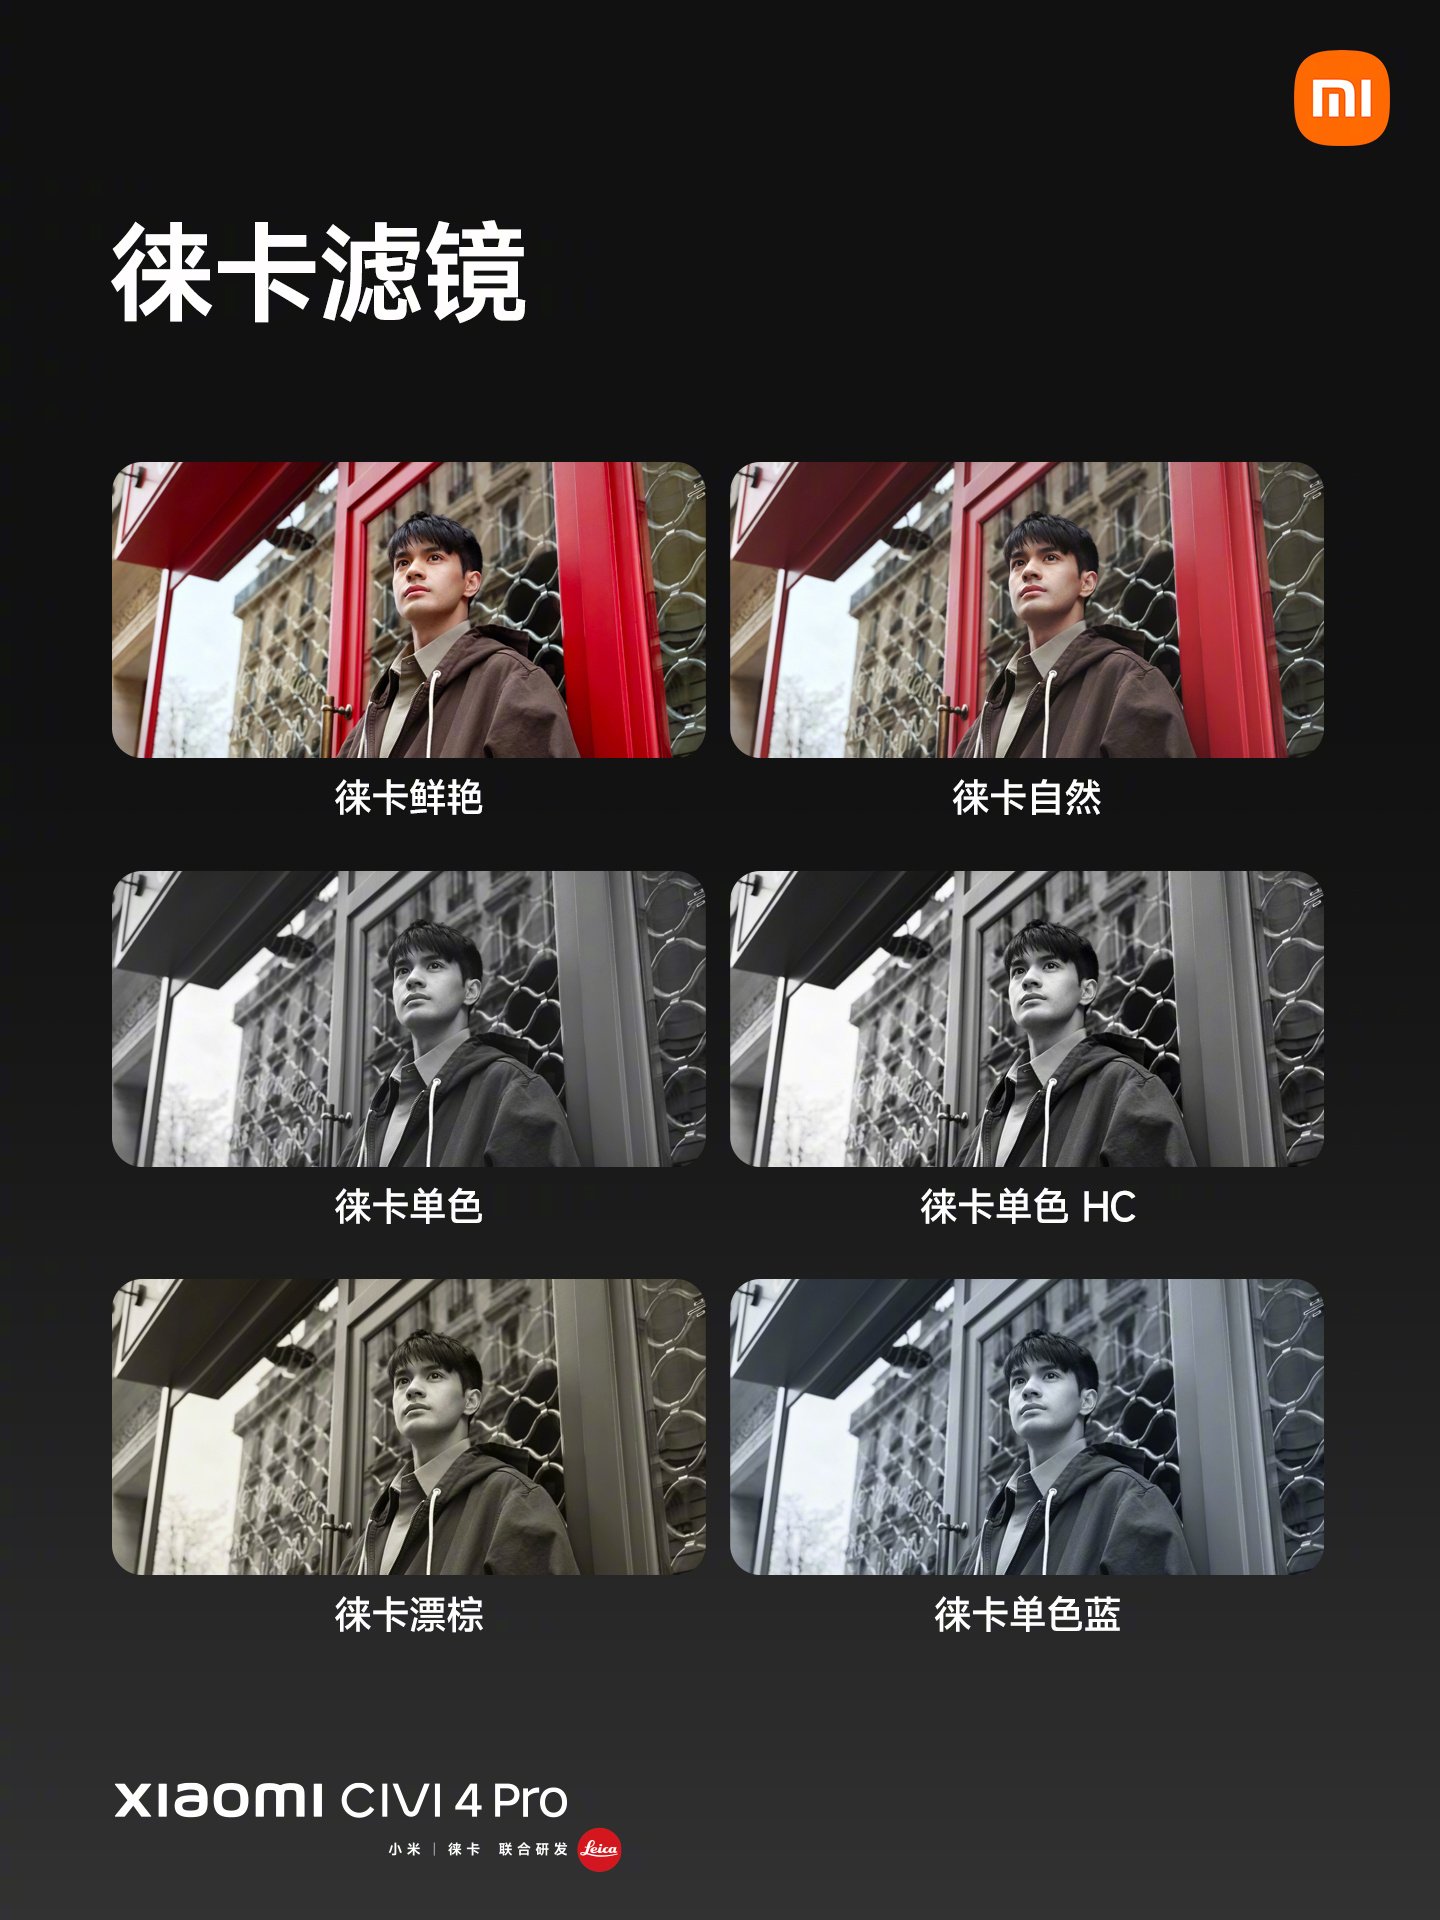 Xiaomi CIVI 4 Pro camera samples